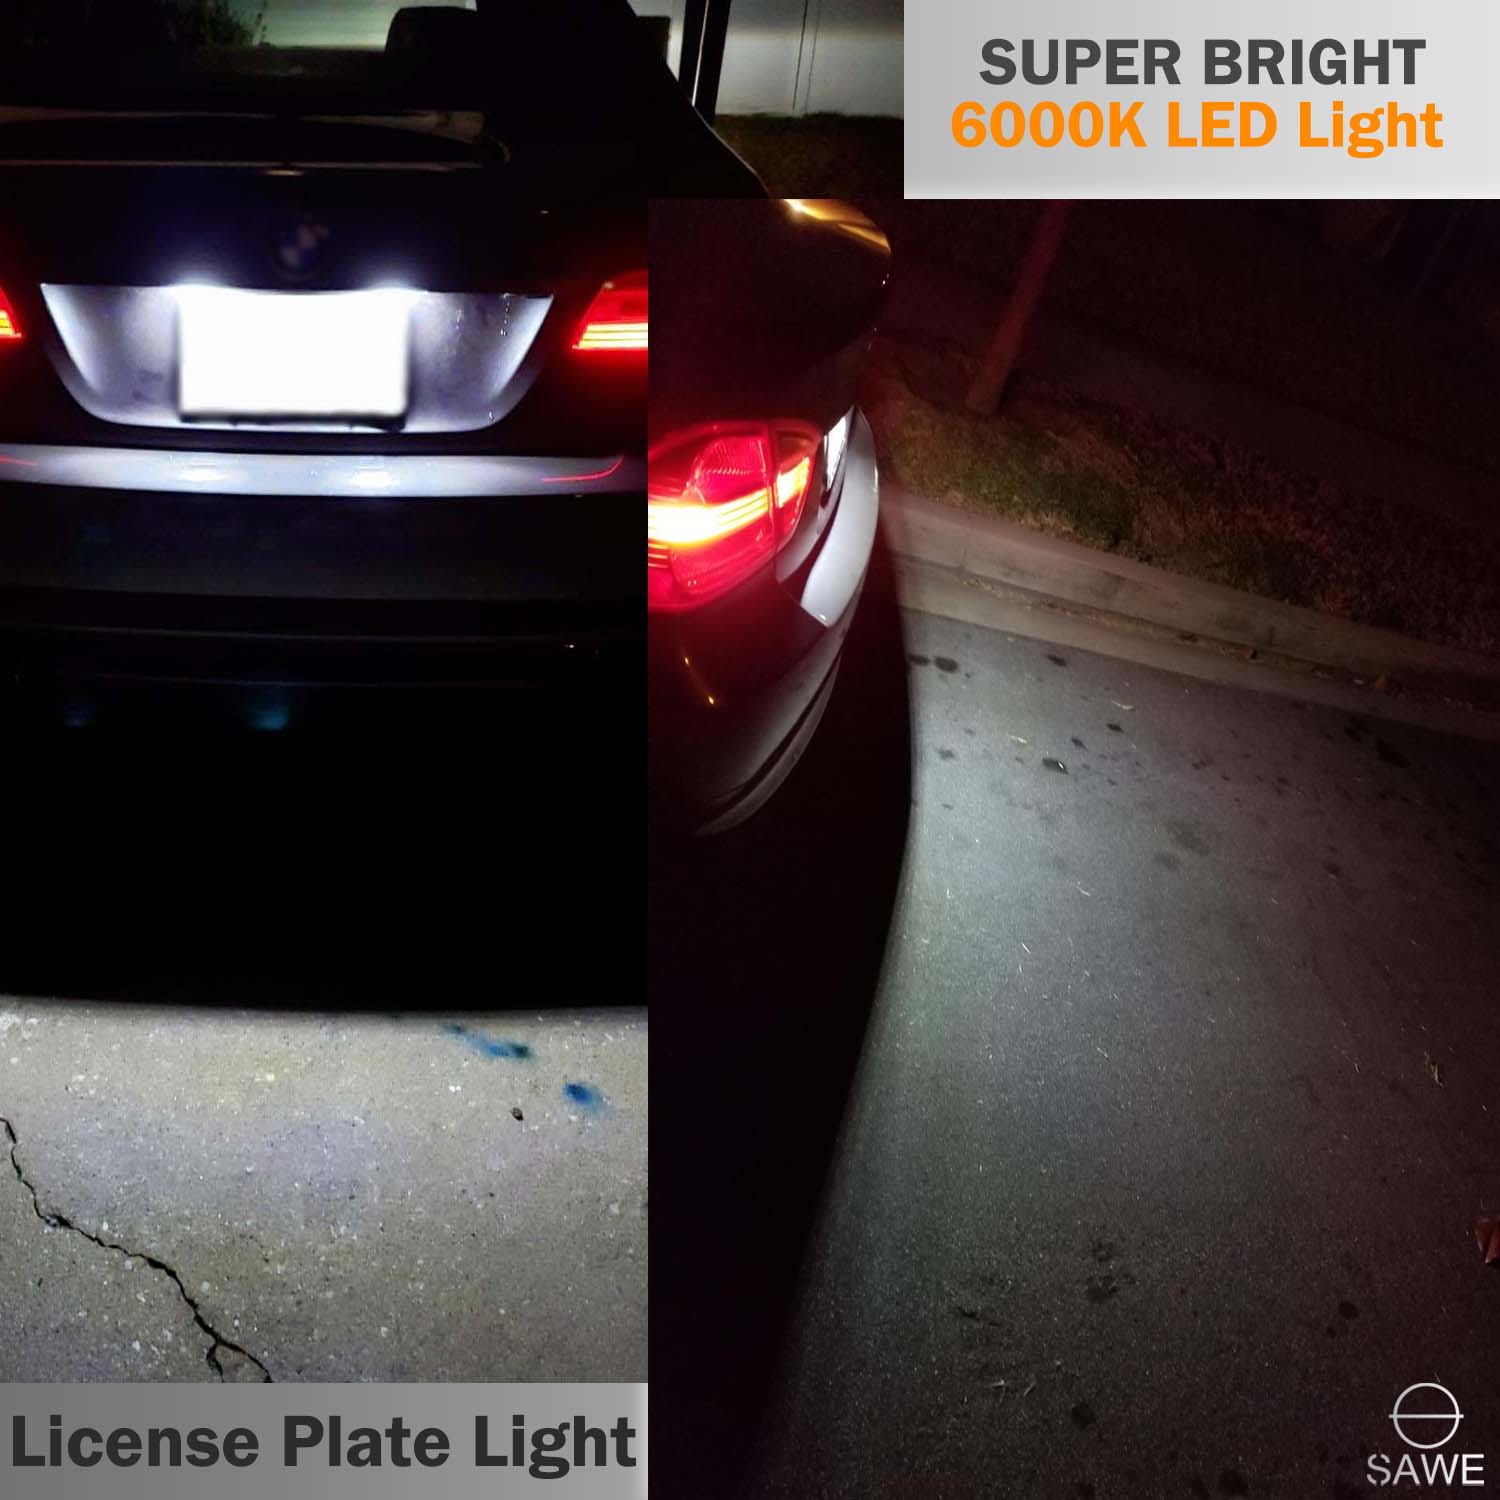 Error Free LED License Plate Light Housing For BMW 135i 325i 328i 335i 528i 535i X6 X5 - White